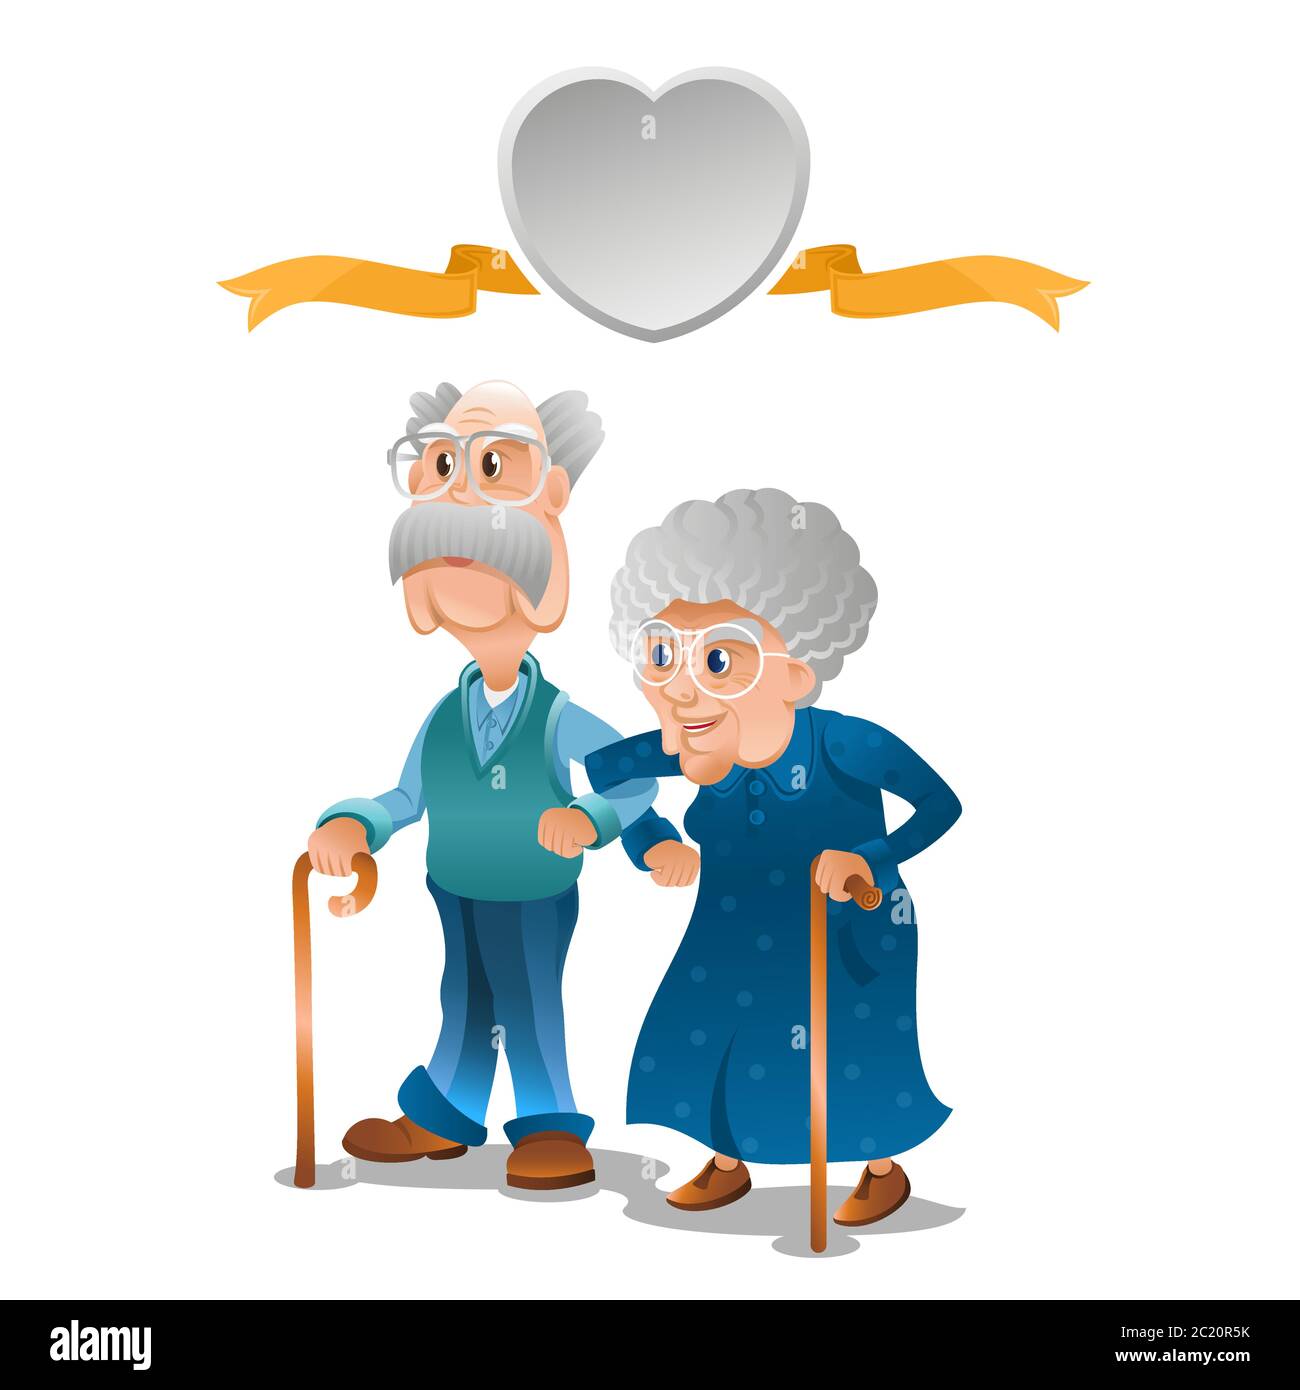 Les vieux grands-parents et les grands-parents se tiennent ensemble bras dans le bras. Couple avec grande bulle de parole dans la forme de coeur au-dessus d'eux. Illustration vectorielle moderne de style plat. Or Illustration de Vecteur